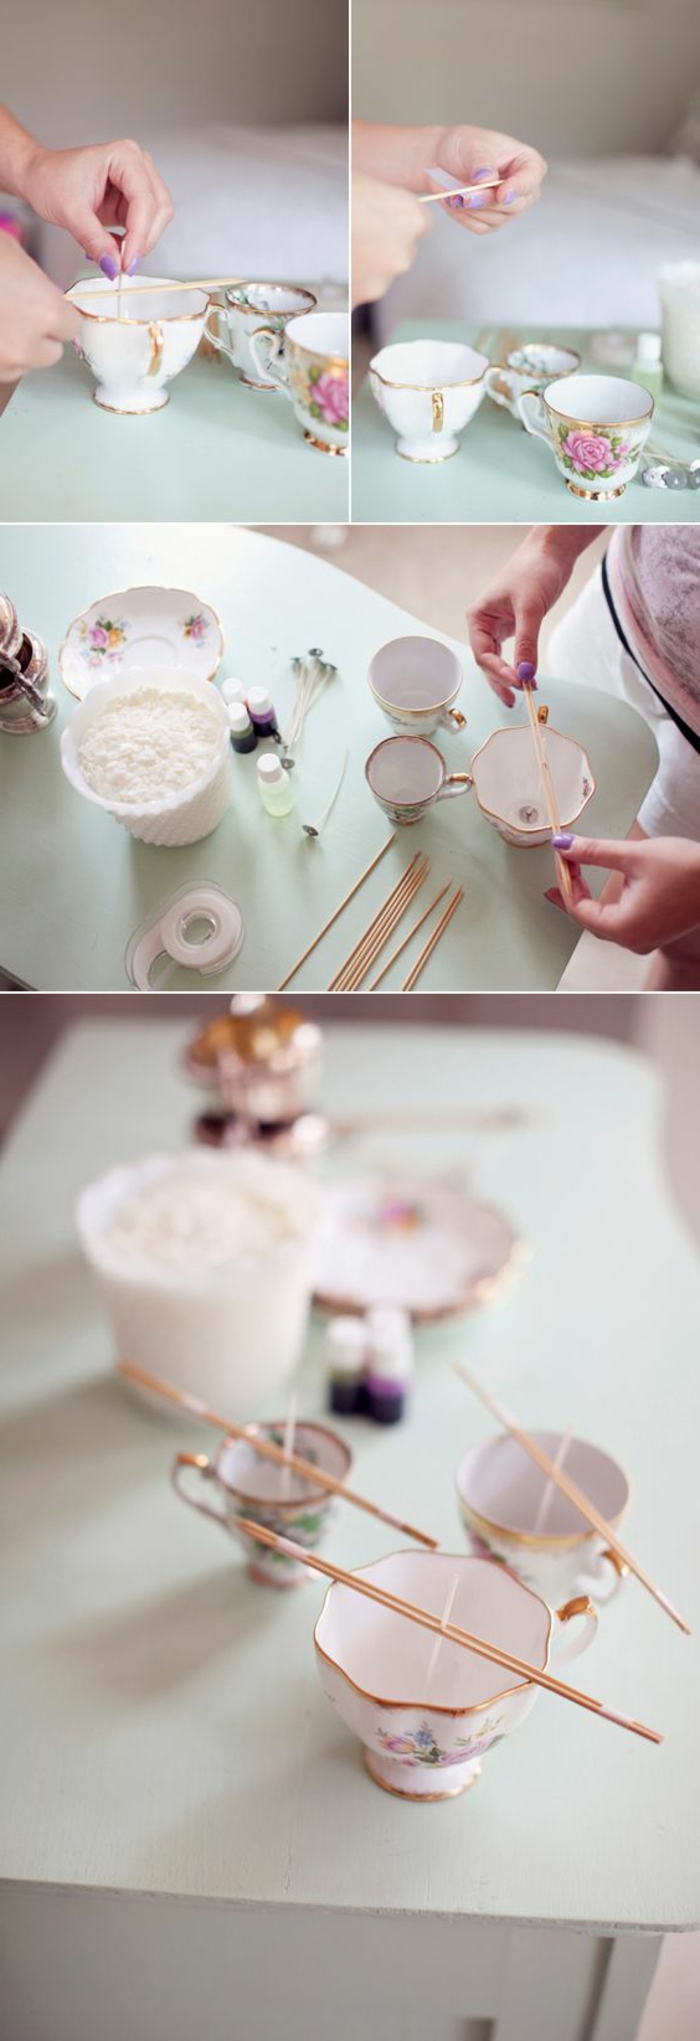 Idea come fare stoppino per candele, tazza da tè utilizzata come portacandele 